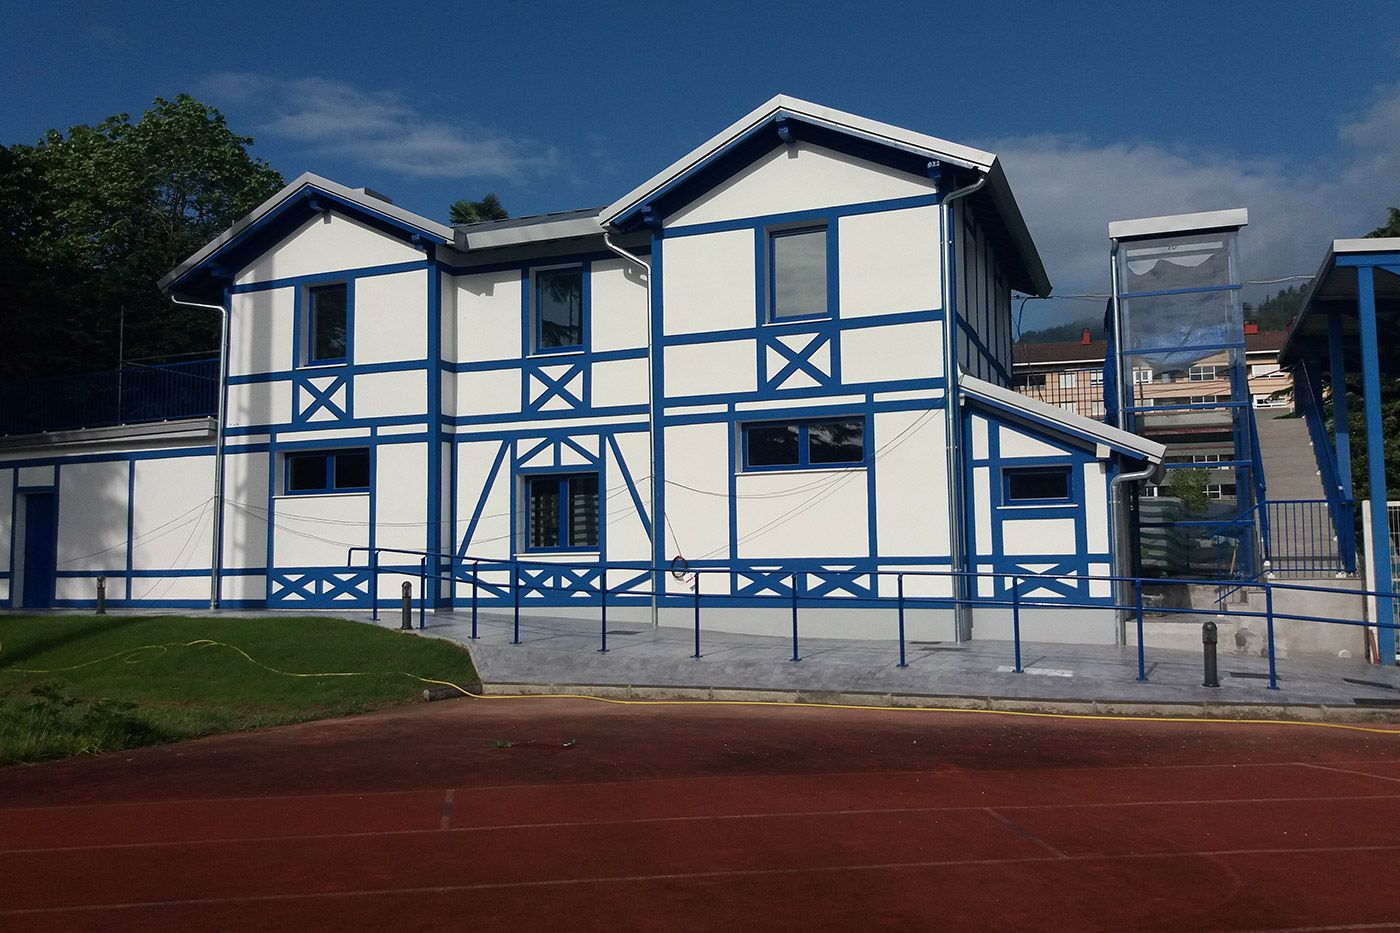 Tolosa futbol club rehabilitación fachada